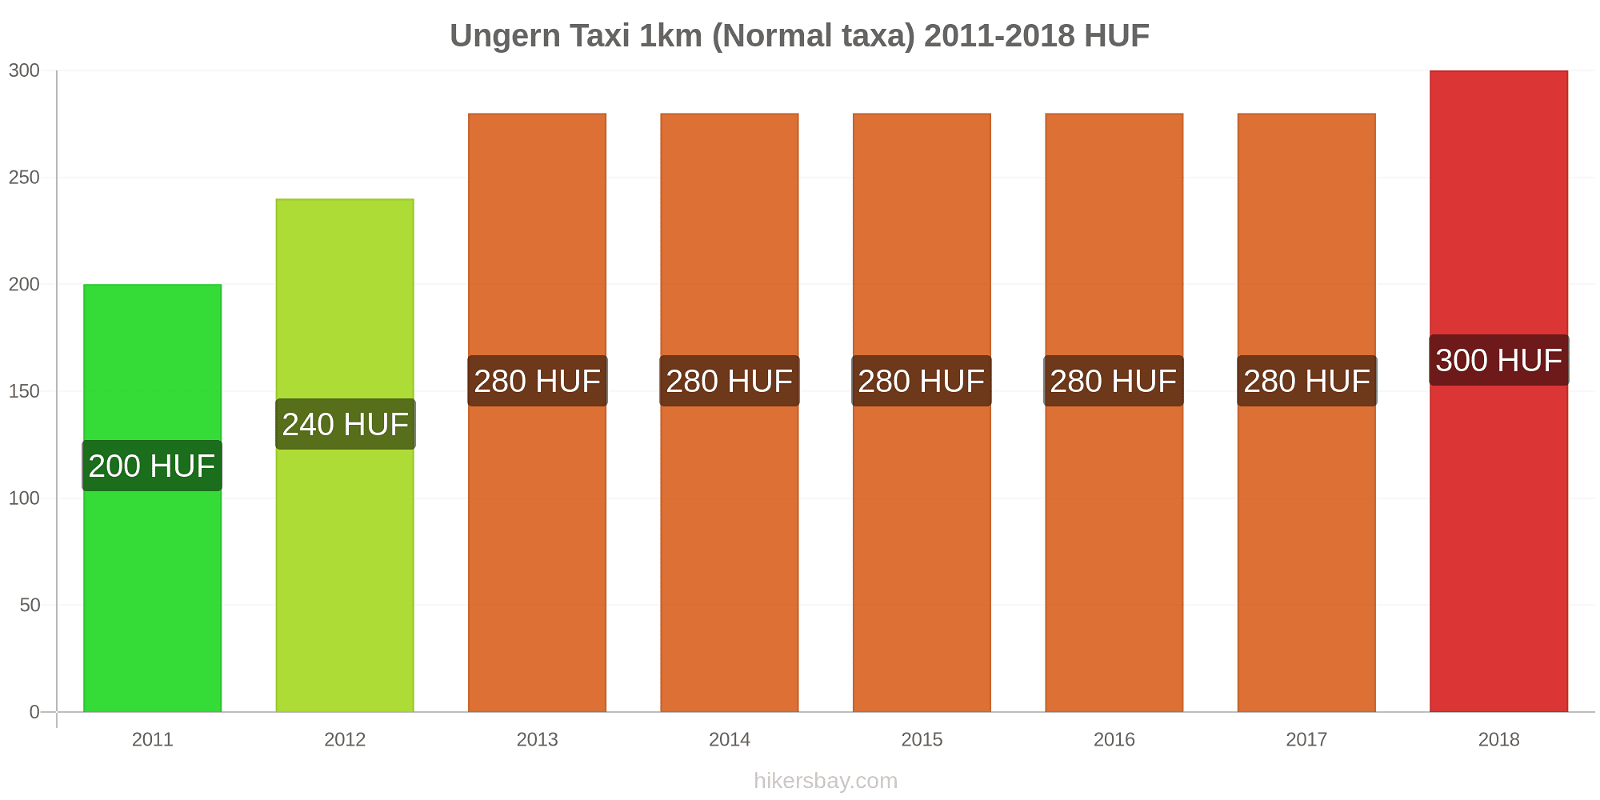 Ungern prisändringar Taxi 1km (Normal taxa) hikersbay.com